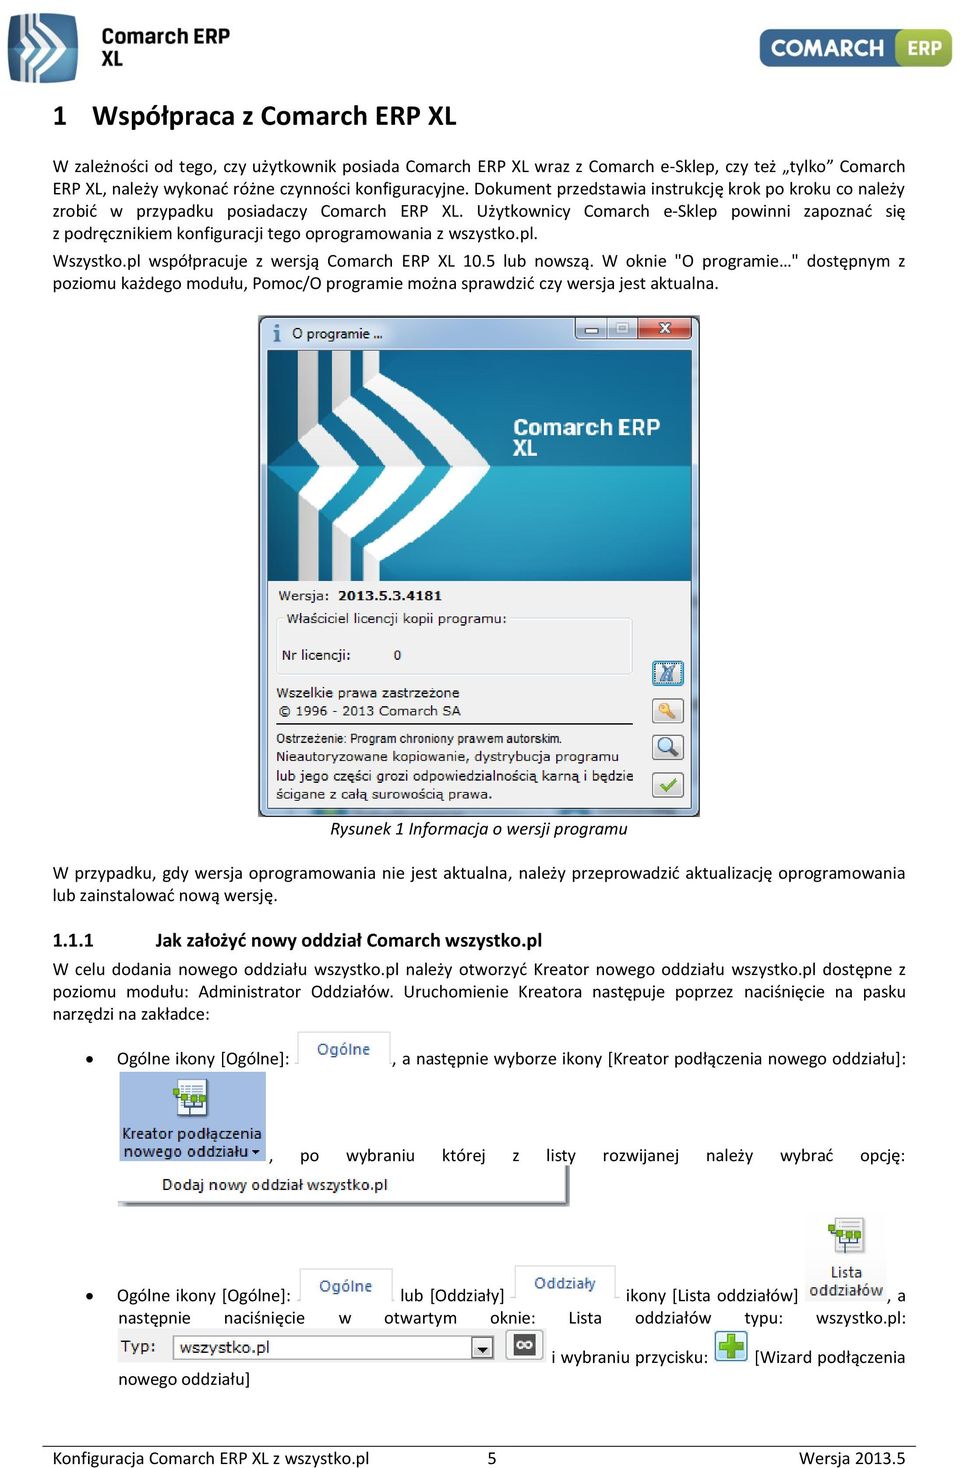 Użytkownicy Comarch e-sklep powinni zapoznad się z podręcznikiem konfiguracji tego oprogramowania z wszystko.pl. Wszystko.pl współpracuje z wersją Comarch ERP XL 10.5 lub nowszą.